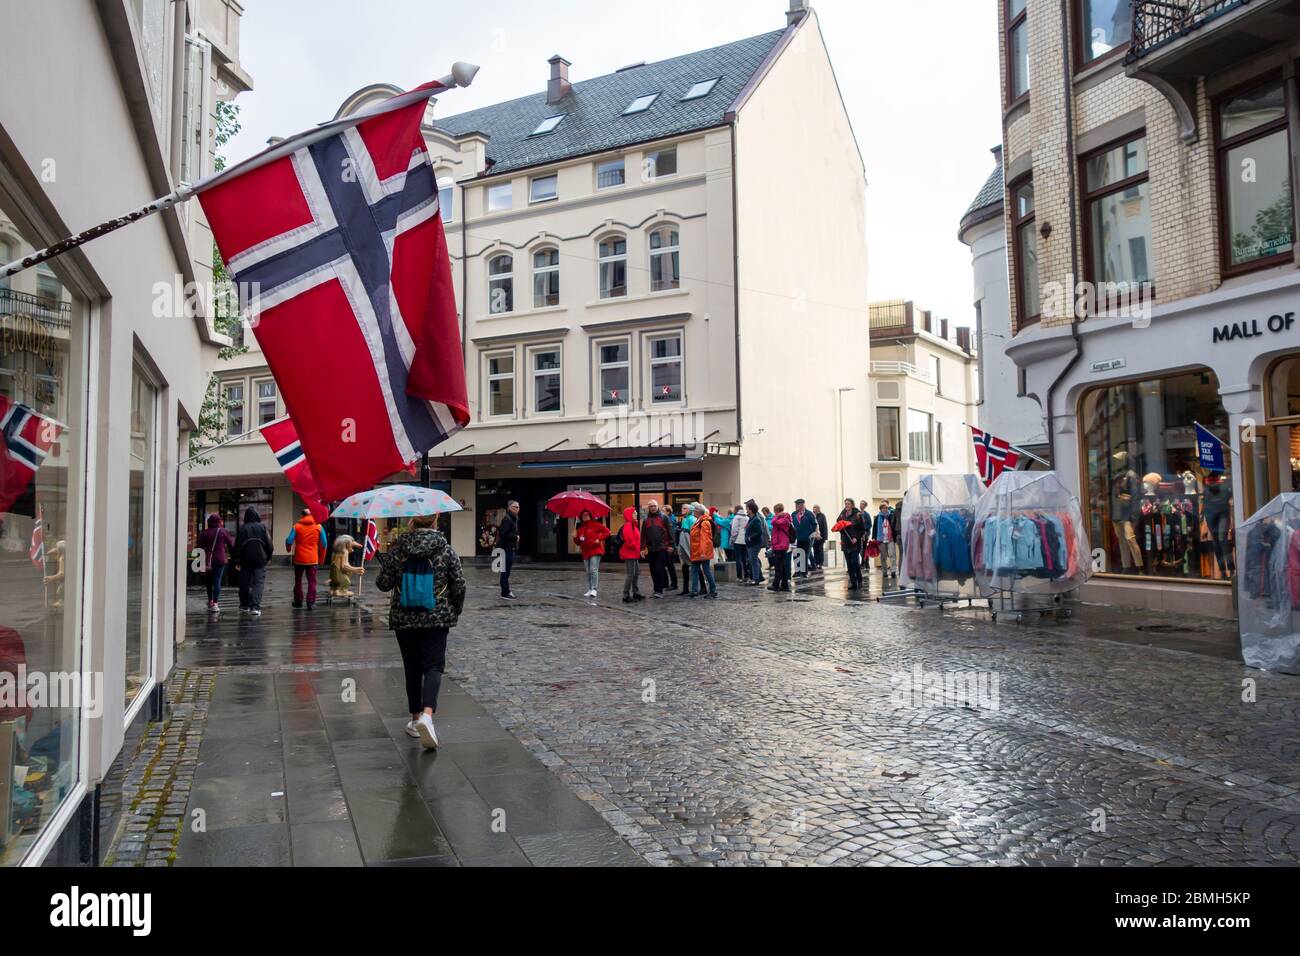 Alesund, Norvegia - 17 agosto 2019: Vista della strada con bandiera norvegese appesa in un edificio, con persone nella strada nella città di Alesund Foto Stock